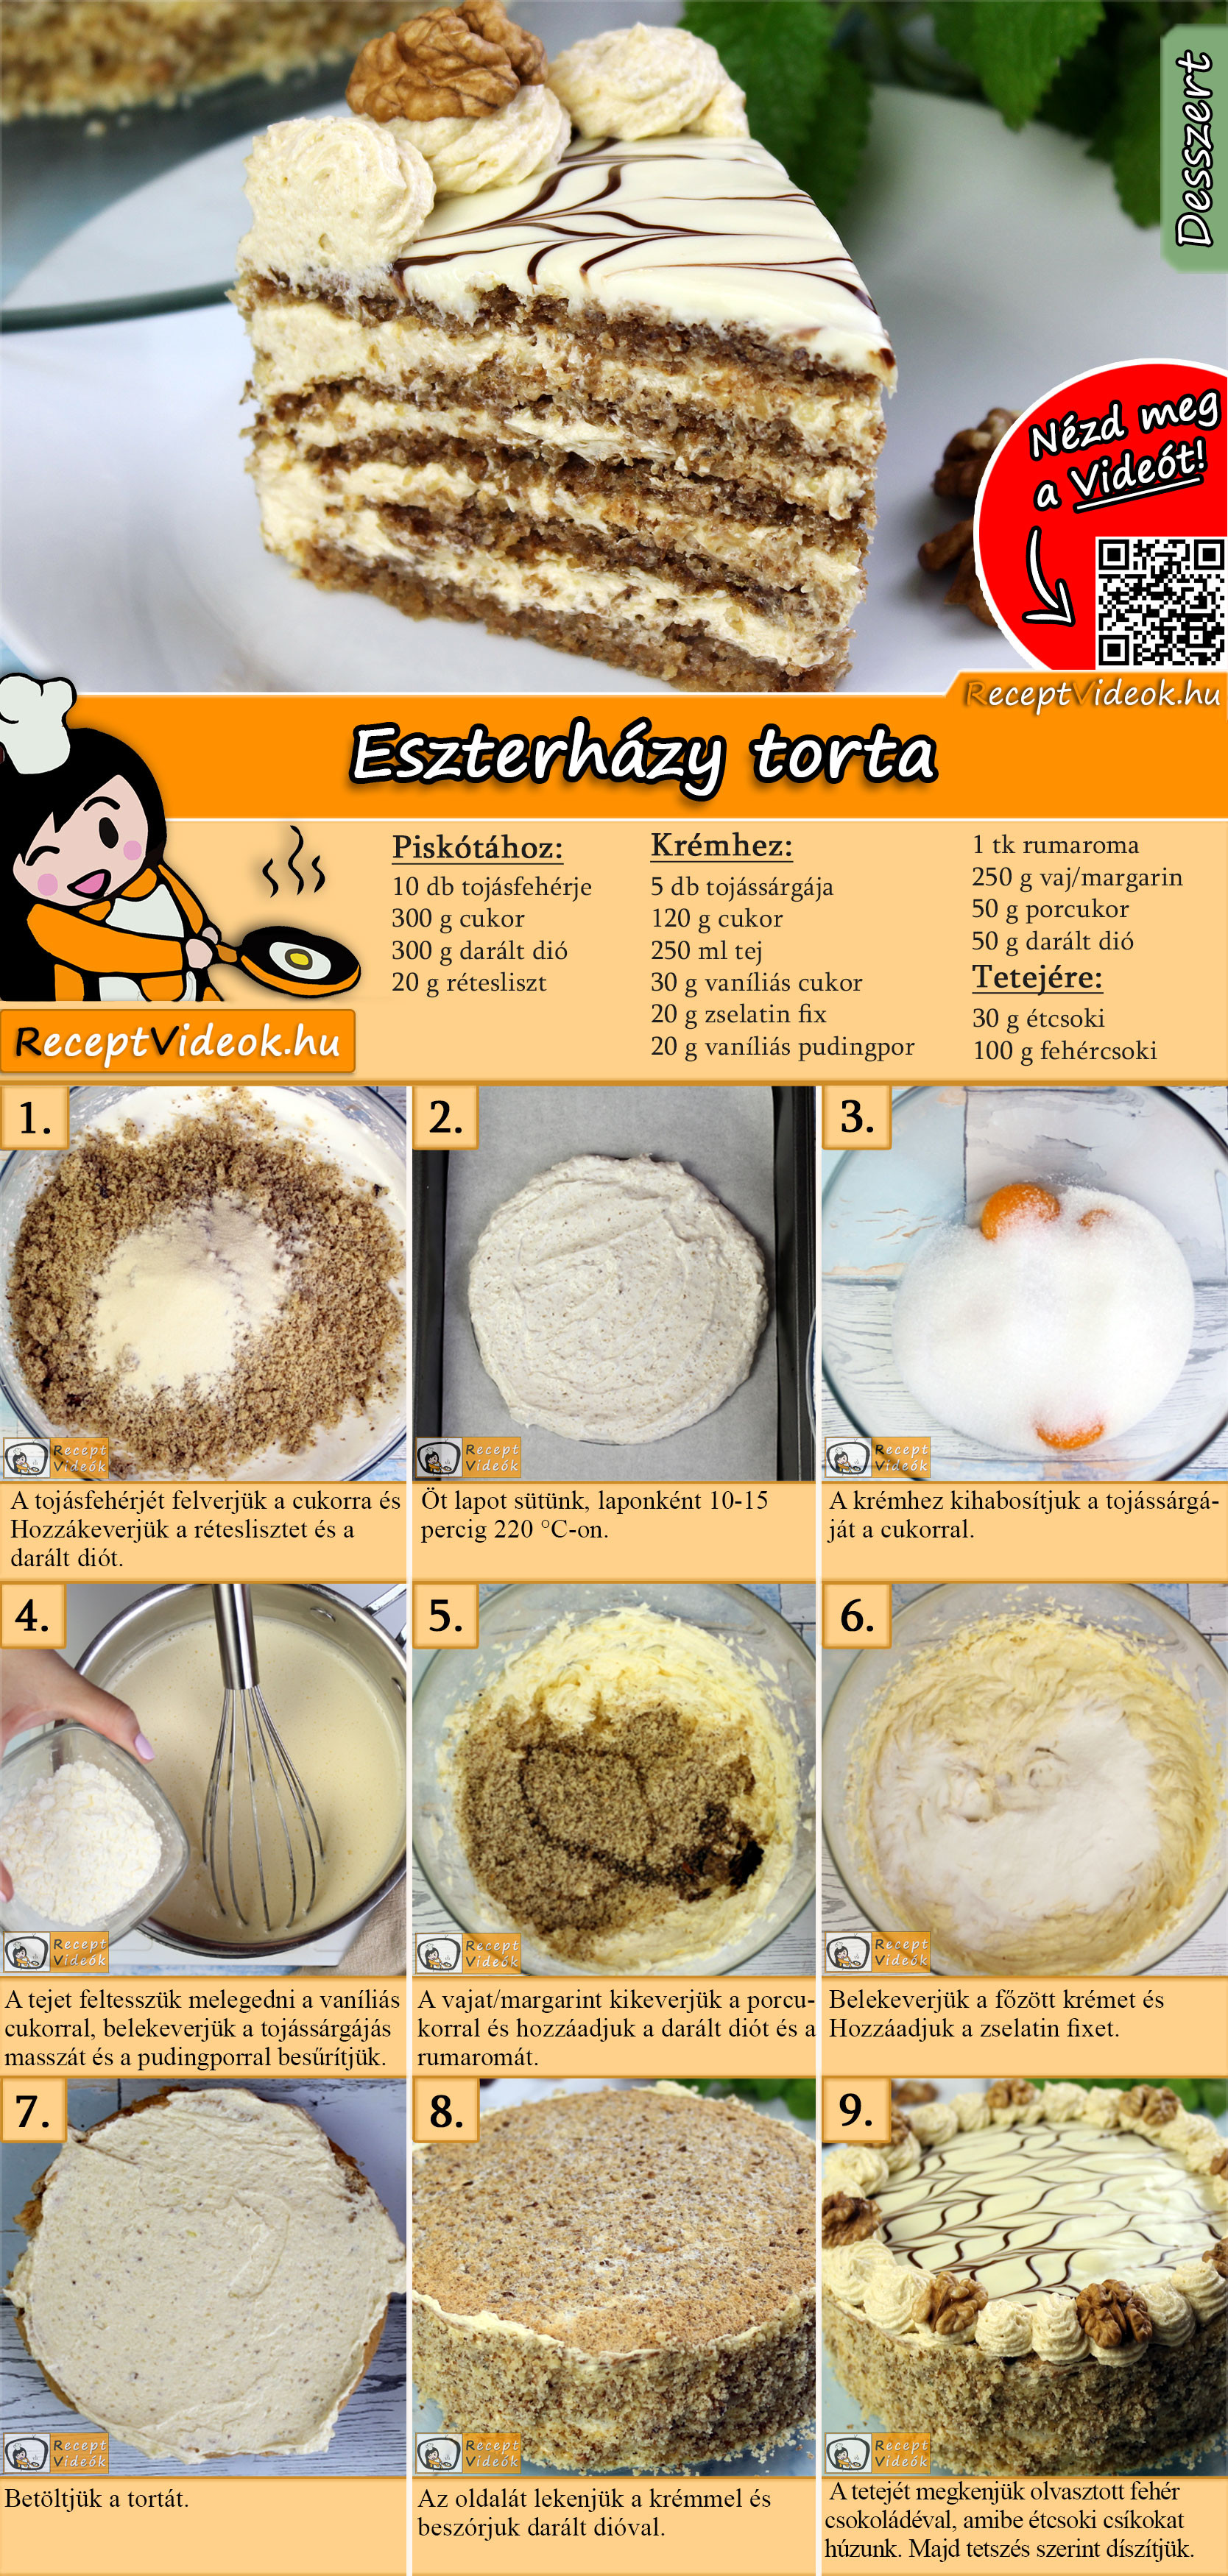 Eszterházy torta recept elkészítése videóval